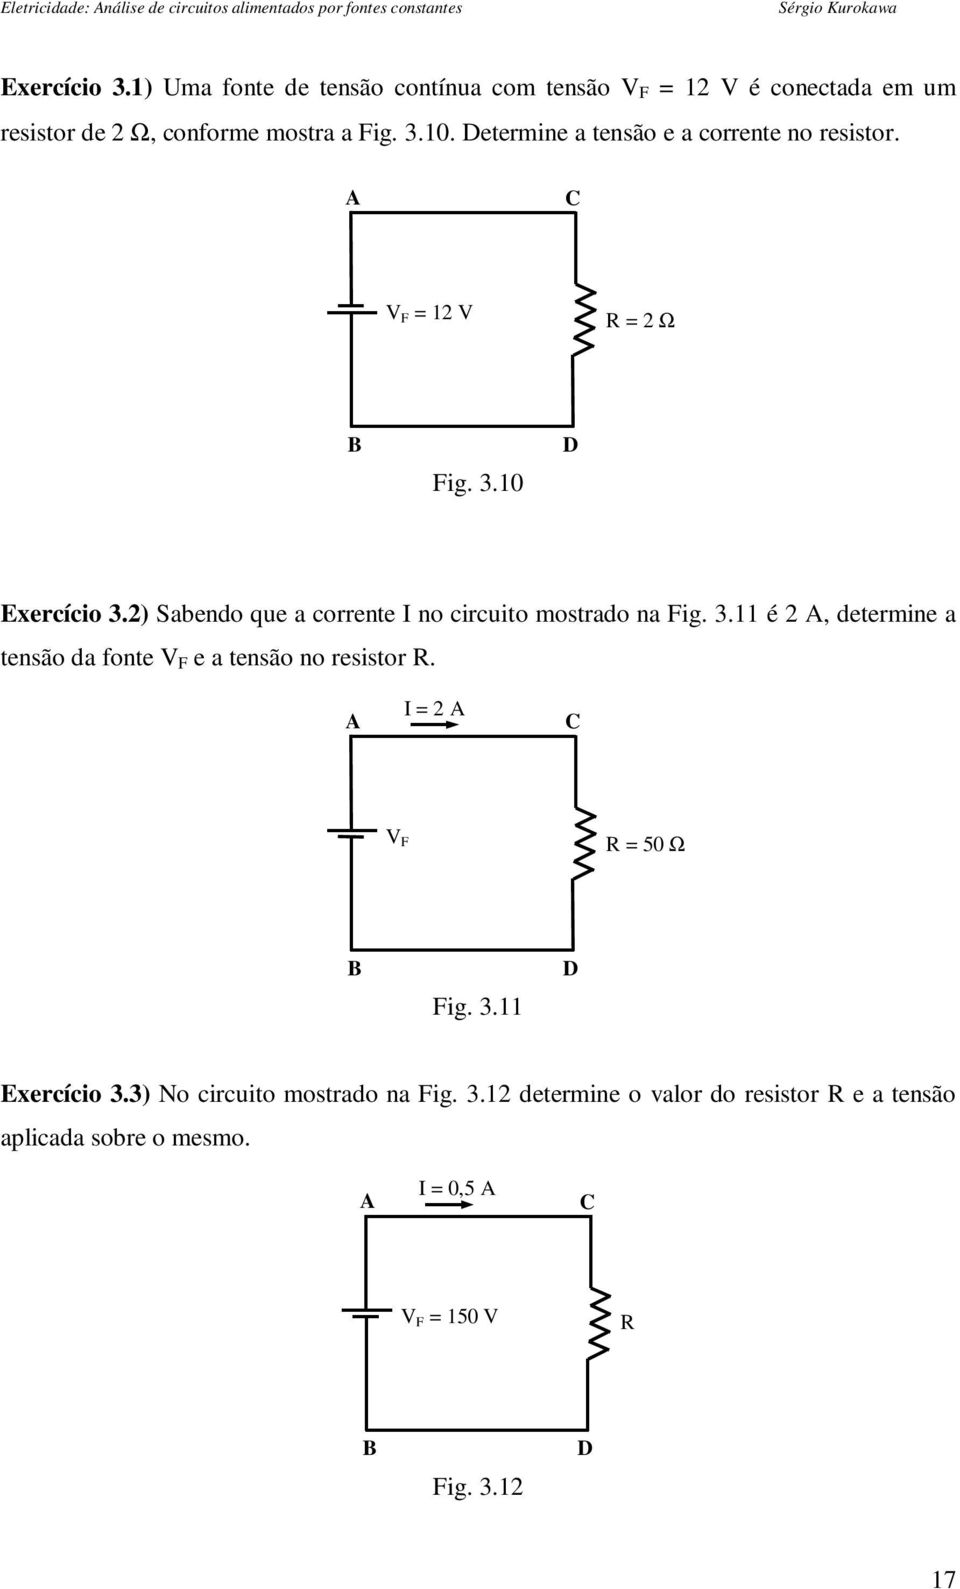 2) Sabendo que a corrente I no circuito mostrado na Fig. 3.11 é 2 A, determine a tensão da fonte V F e a tensão no resistor R.